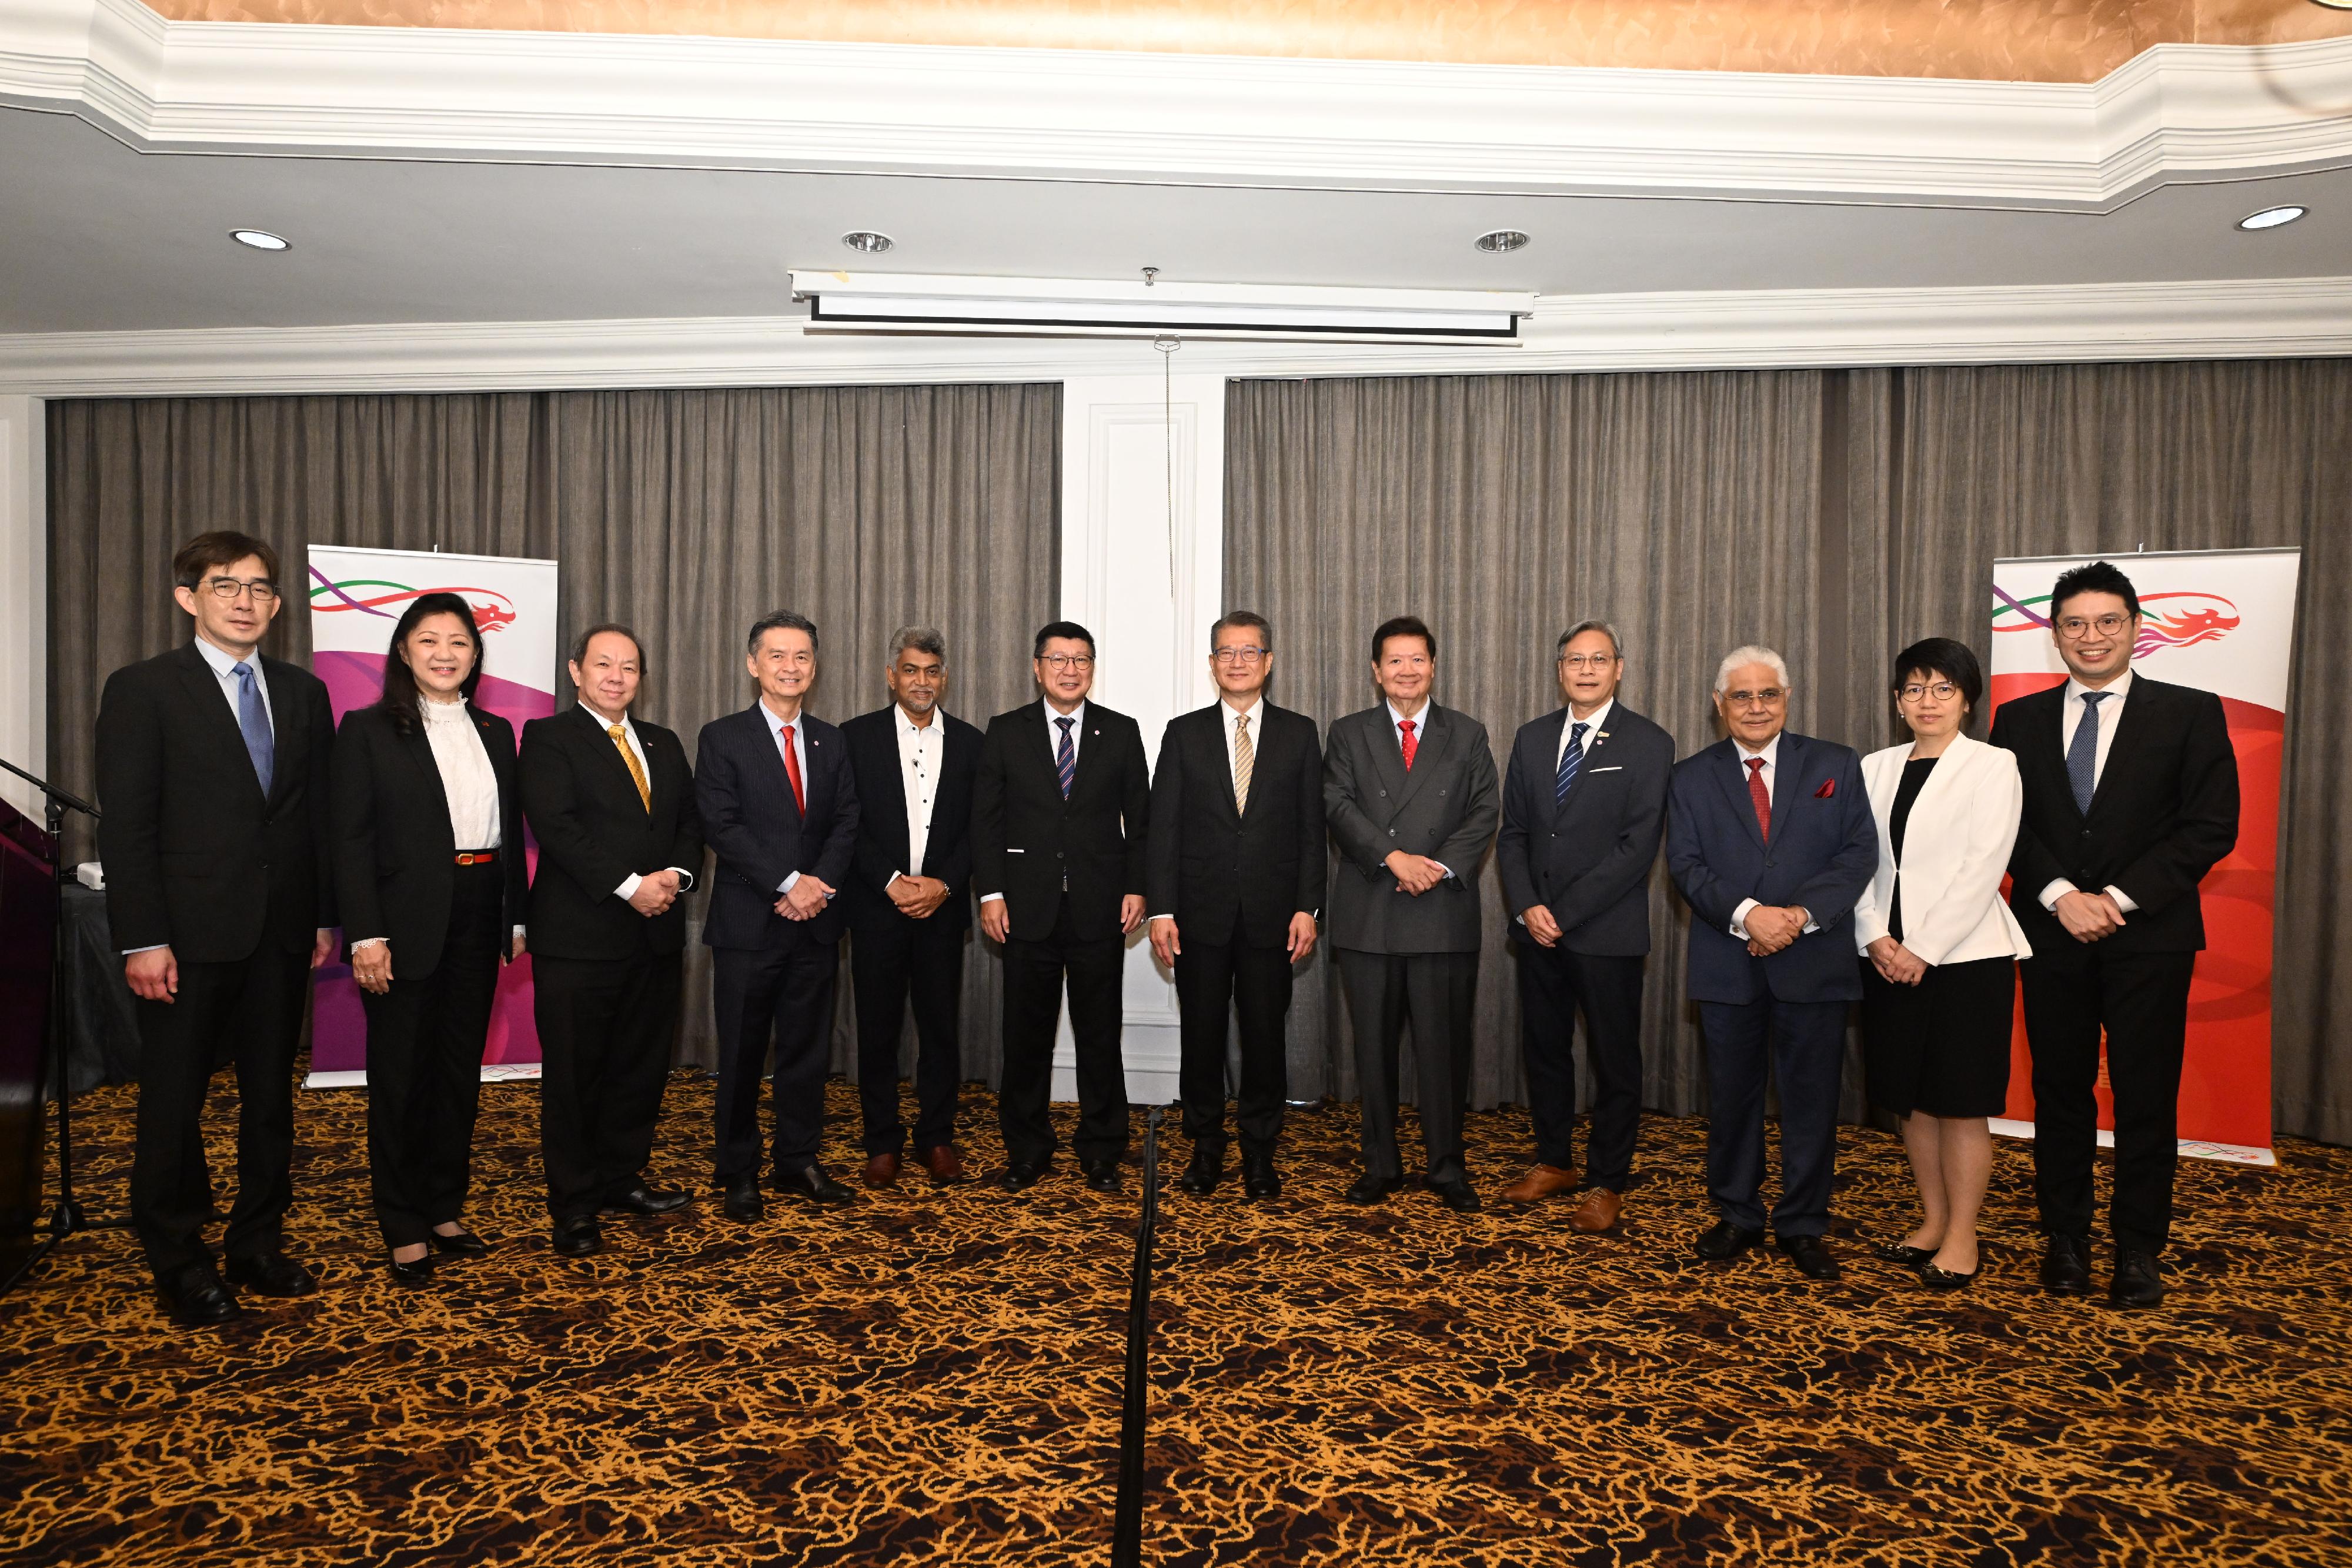 財政司司長陳茂波三月二十七日正式展開馬來西亞的訪問行程。圖示陳茂波（右六）出席由香港駐雅加達經濟貿易辦事處和馬來西亞全國總商會合辦的午餐會並與商會主要人員合照。